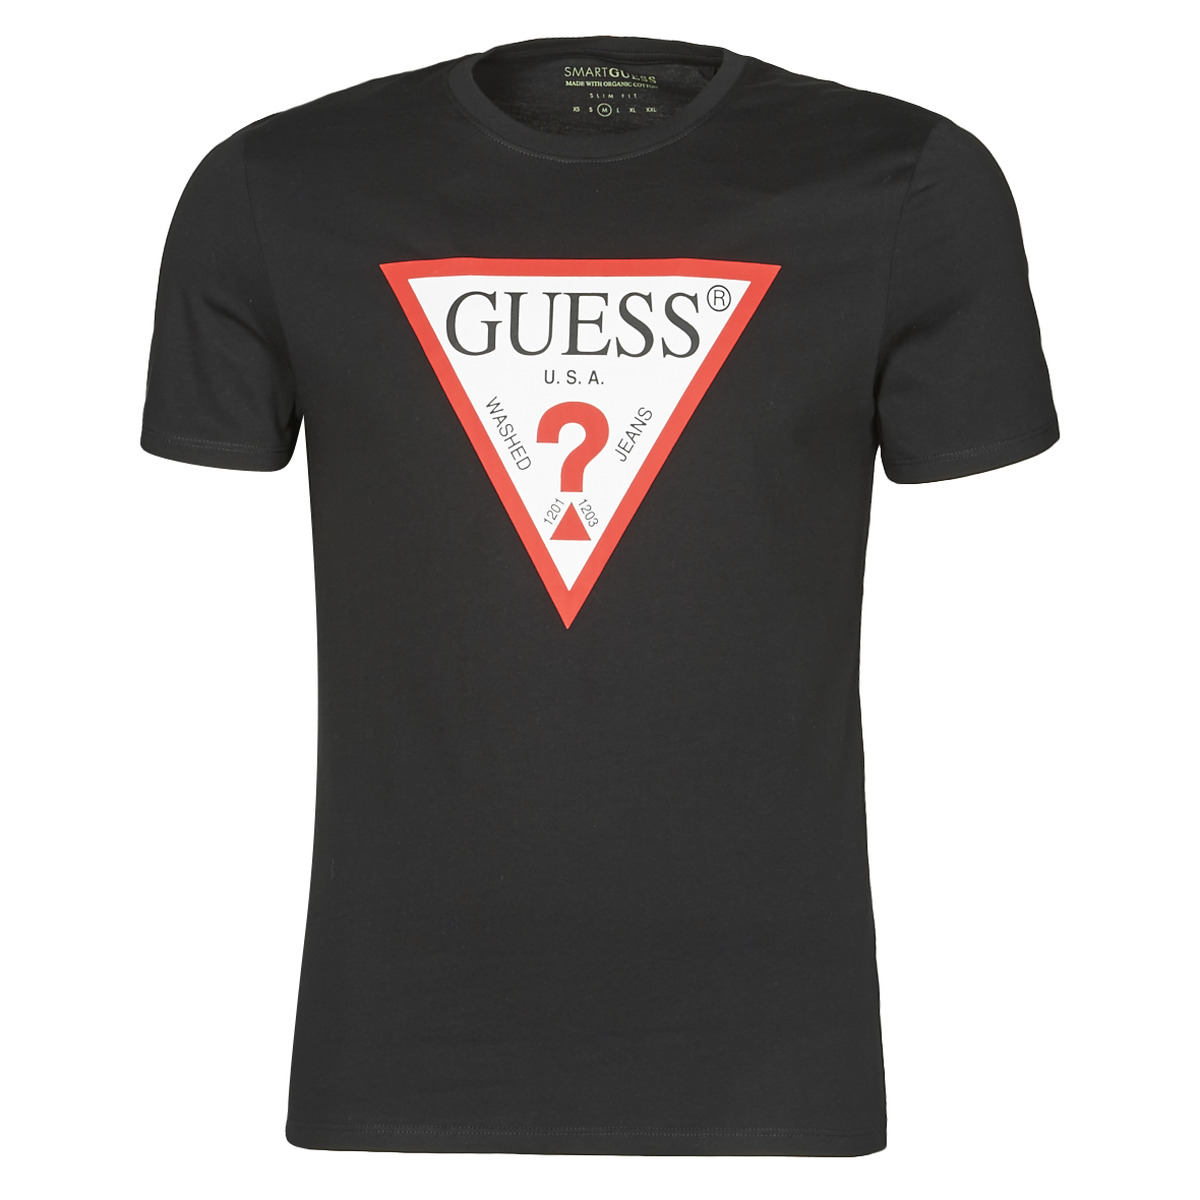 Сайт гуес. Guess u.s.a. Guess футболка мужская черная. United 4 t Shirt. USA Black logo.